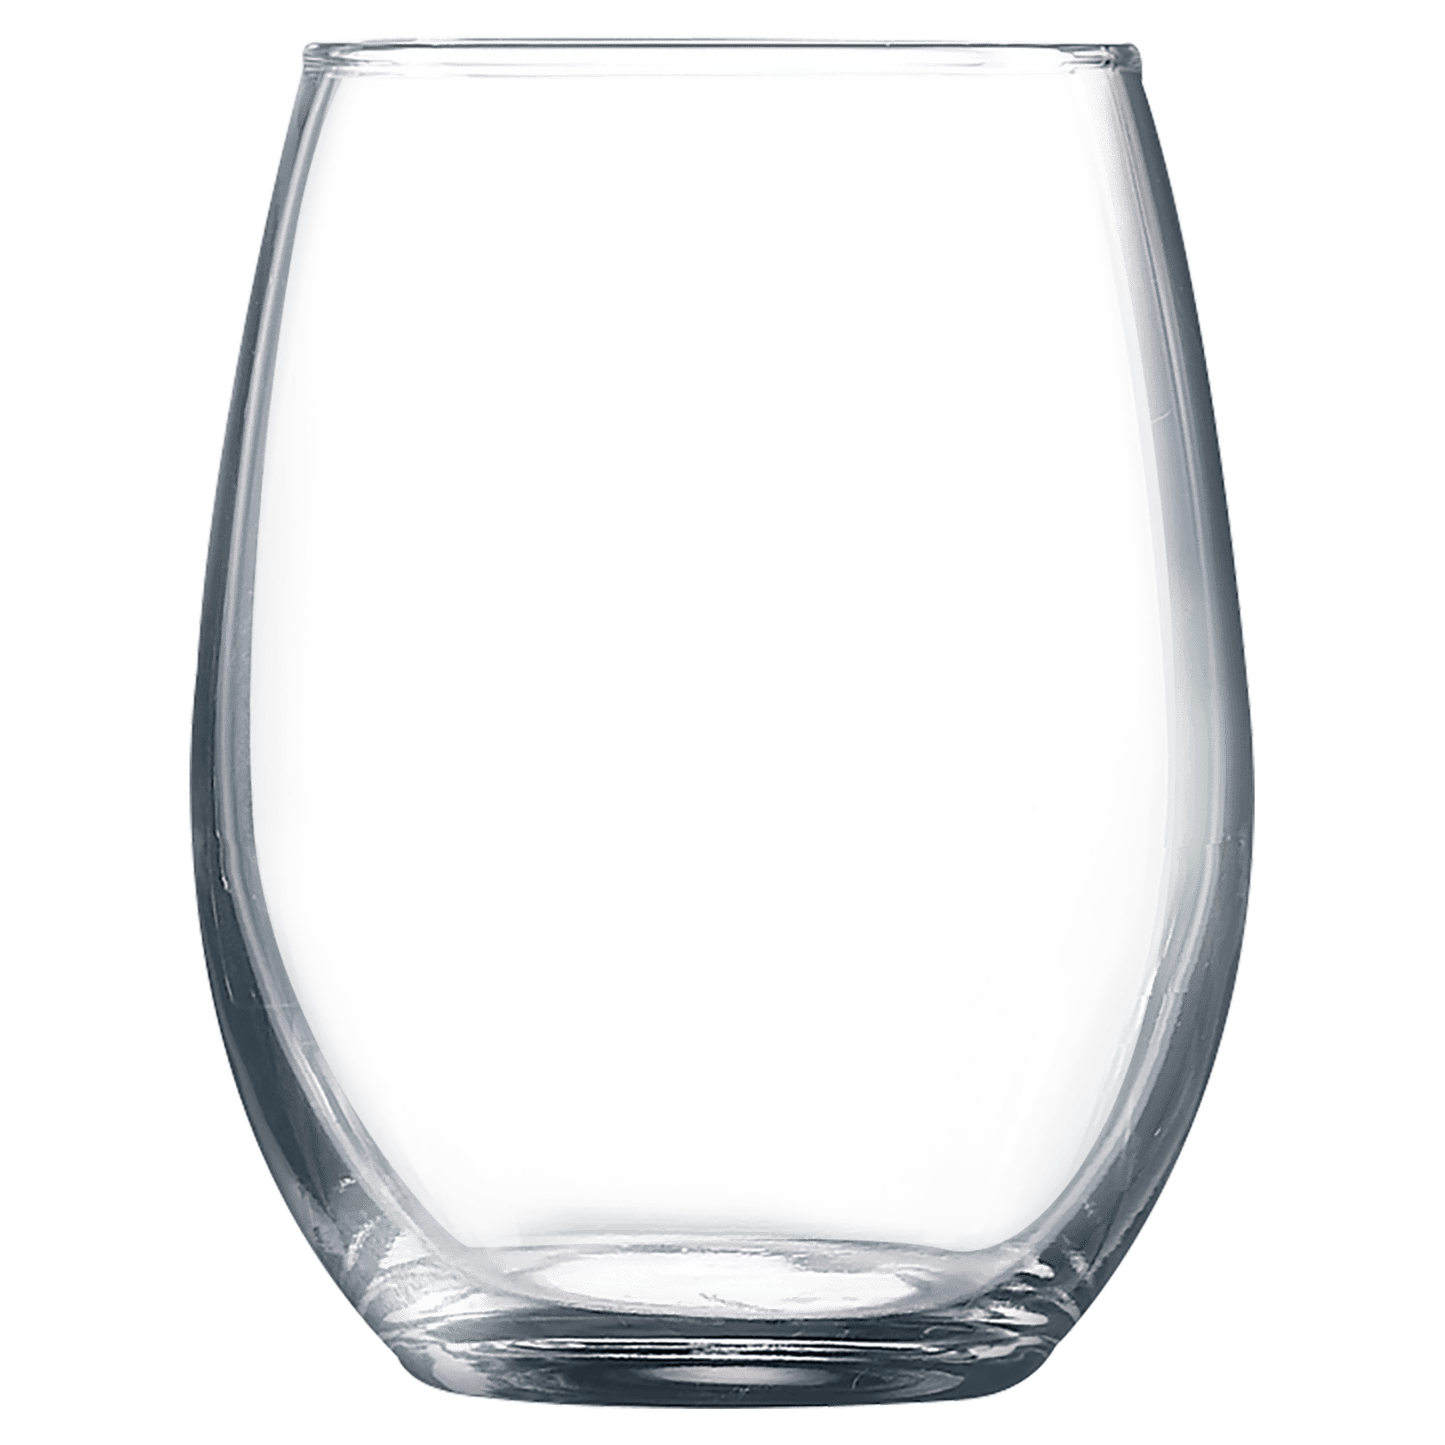 Personalized 9 oz. Stemless Wine Glass